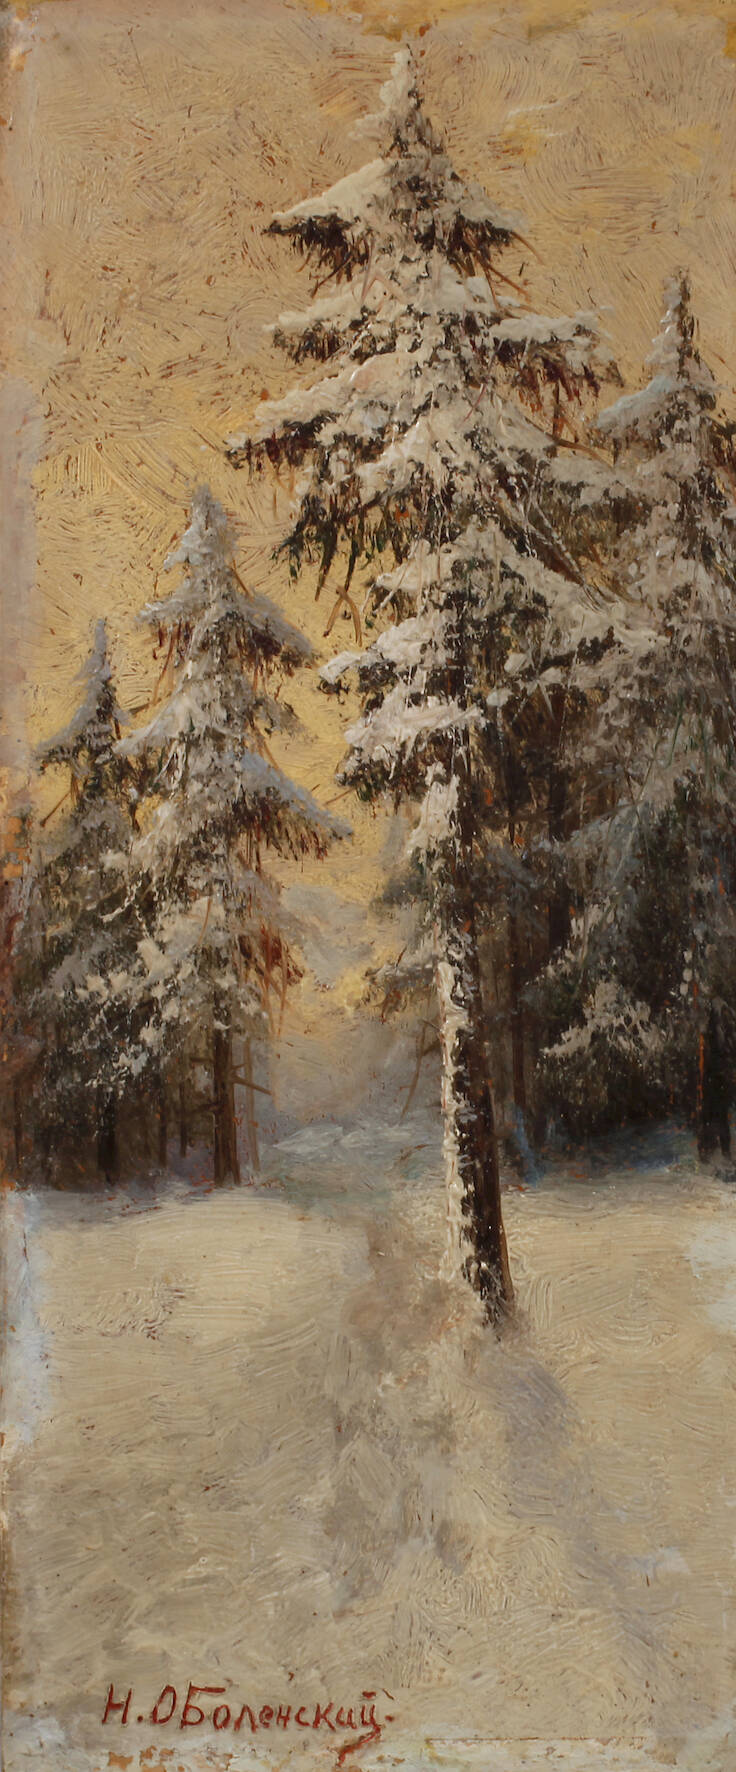 N. Obolenskyi, Winterliche Waldlandschaft